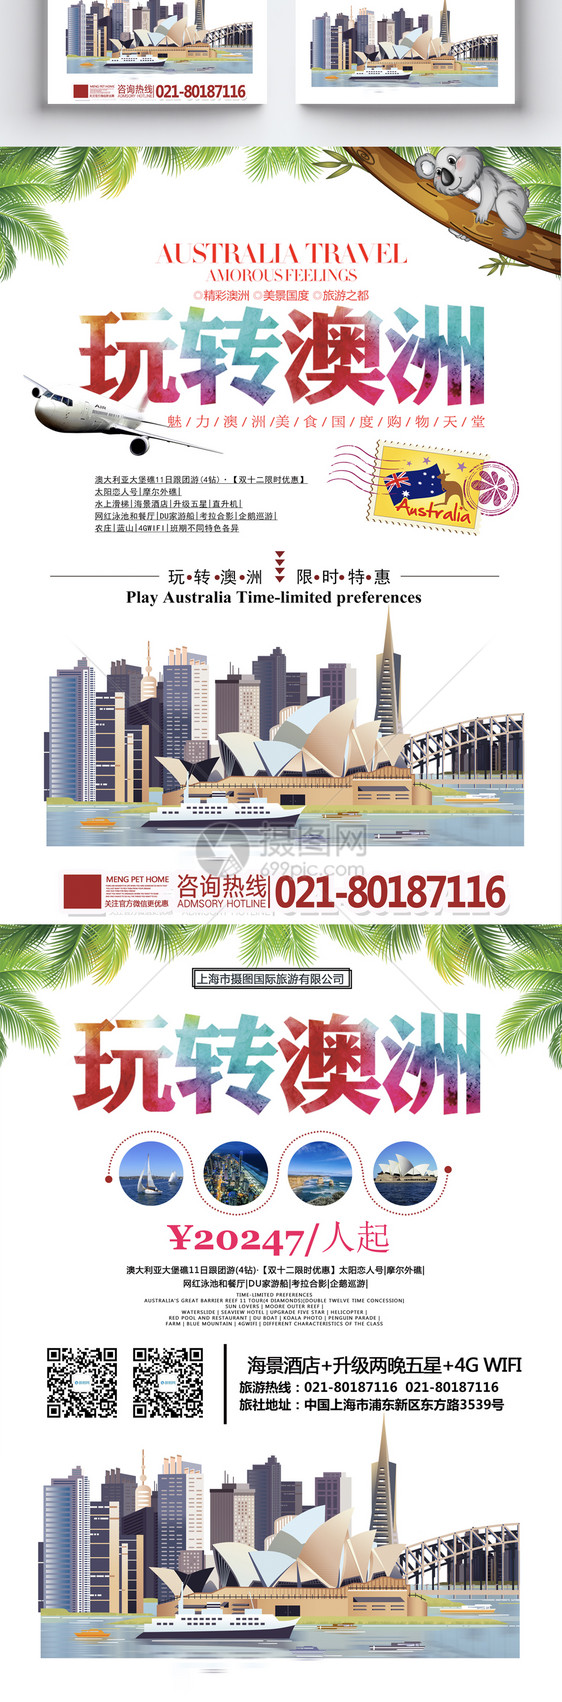 澳洲旅游宣传单图片